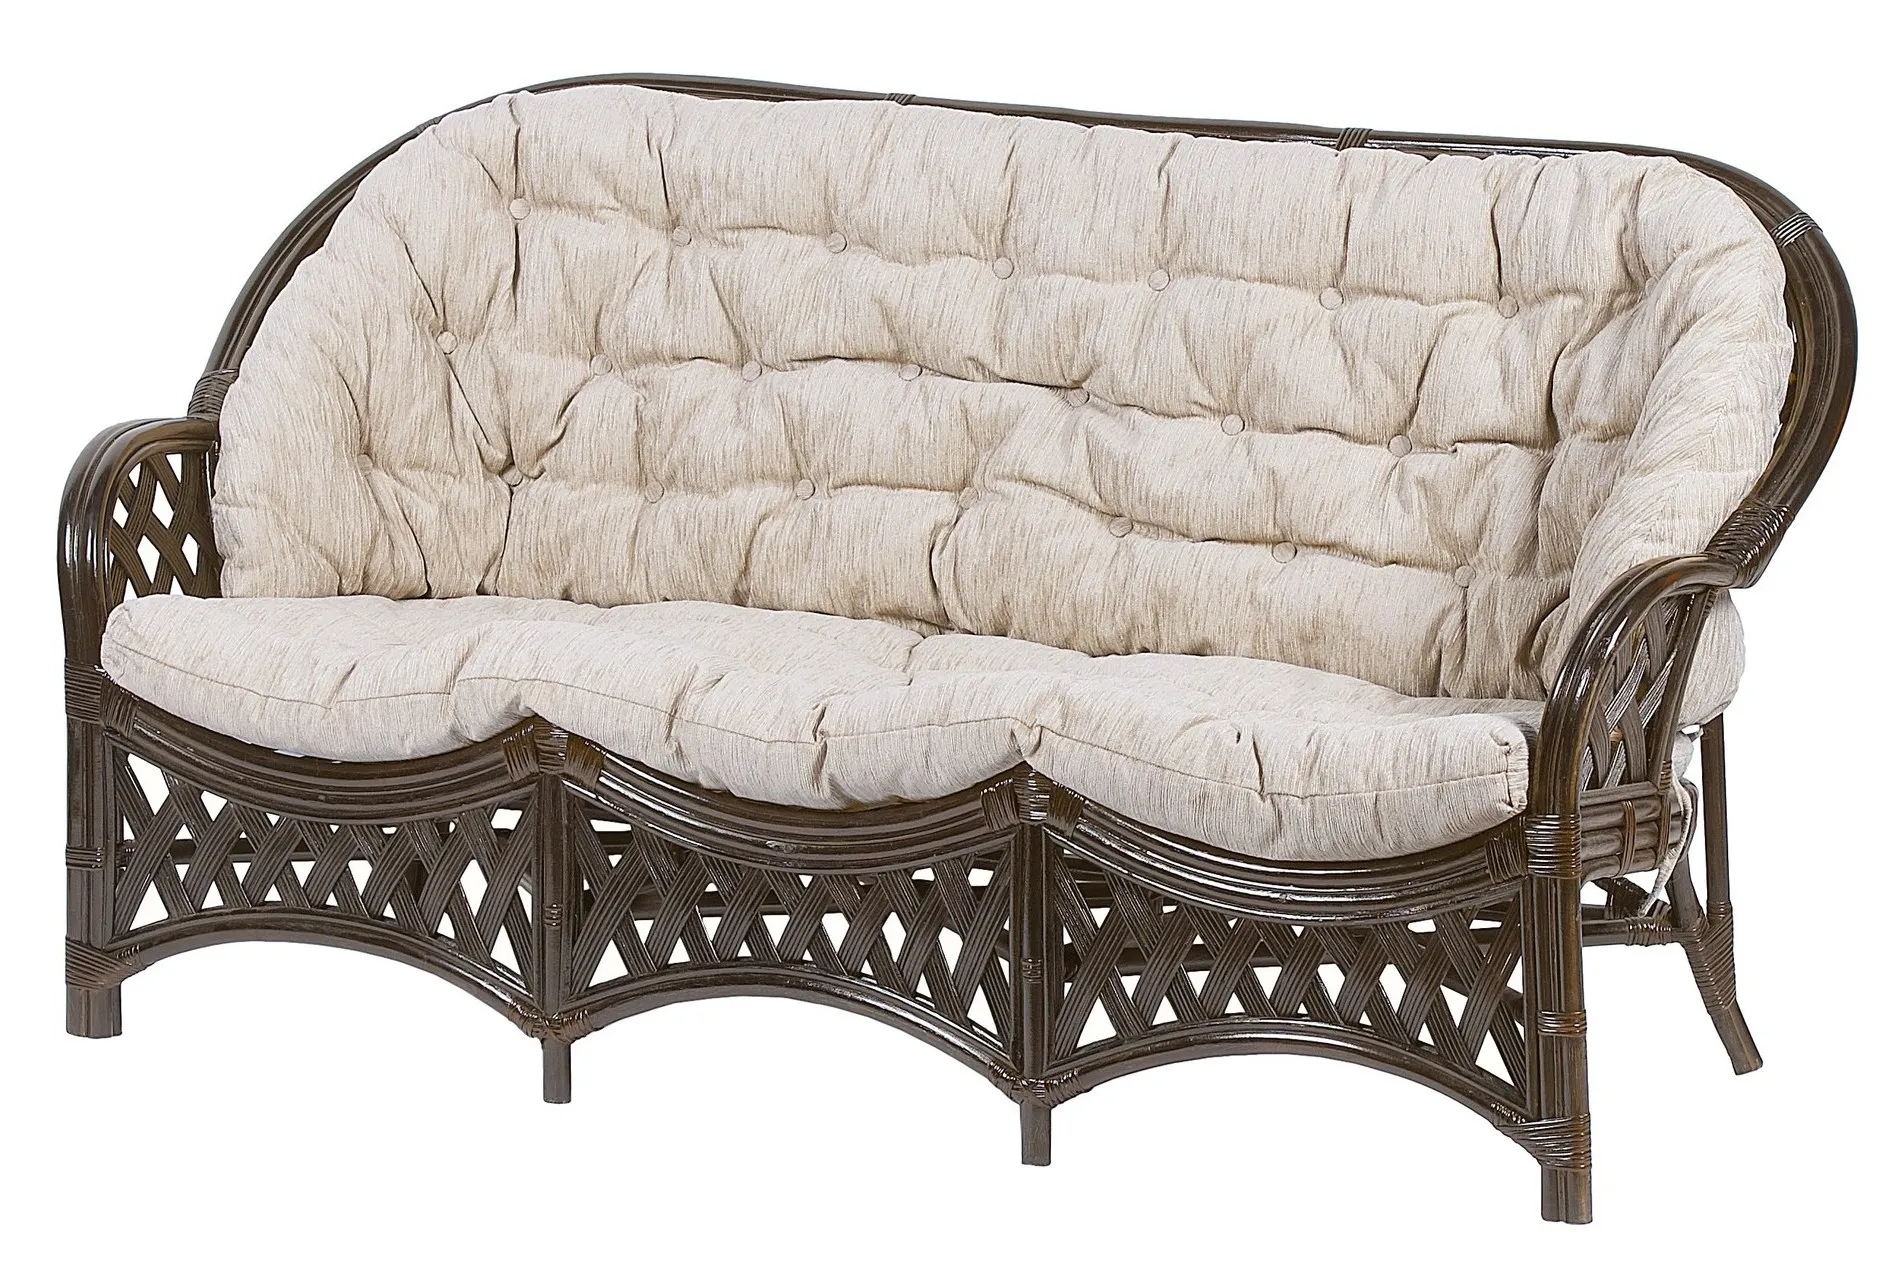 Комплект мебели из ротанга Черчилль (Рузвельт) с 3-х местным диваном и овальным столом коричневый